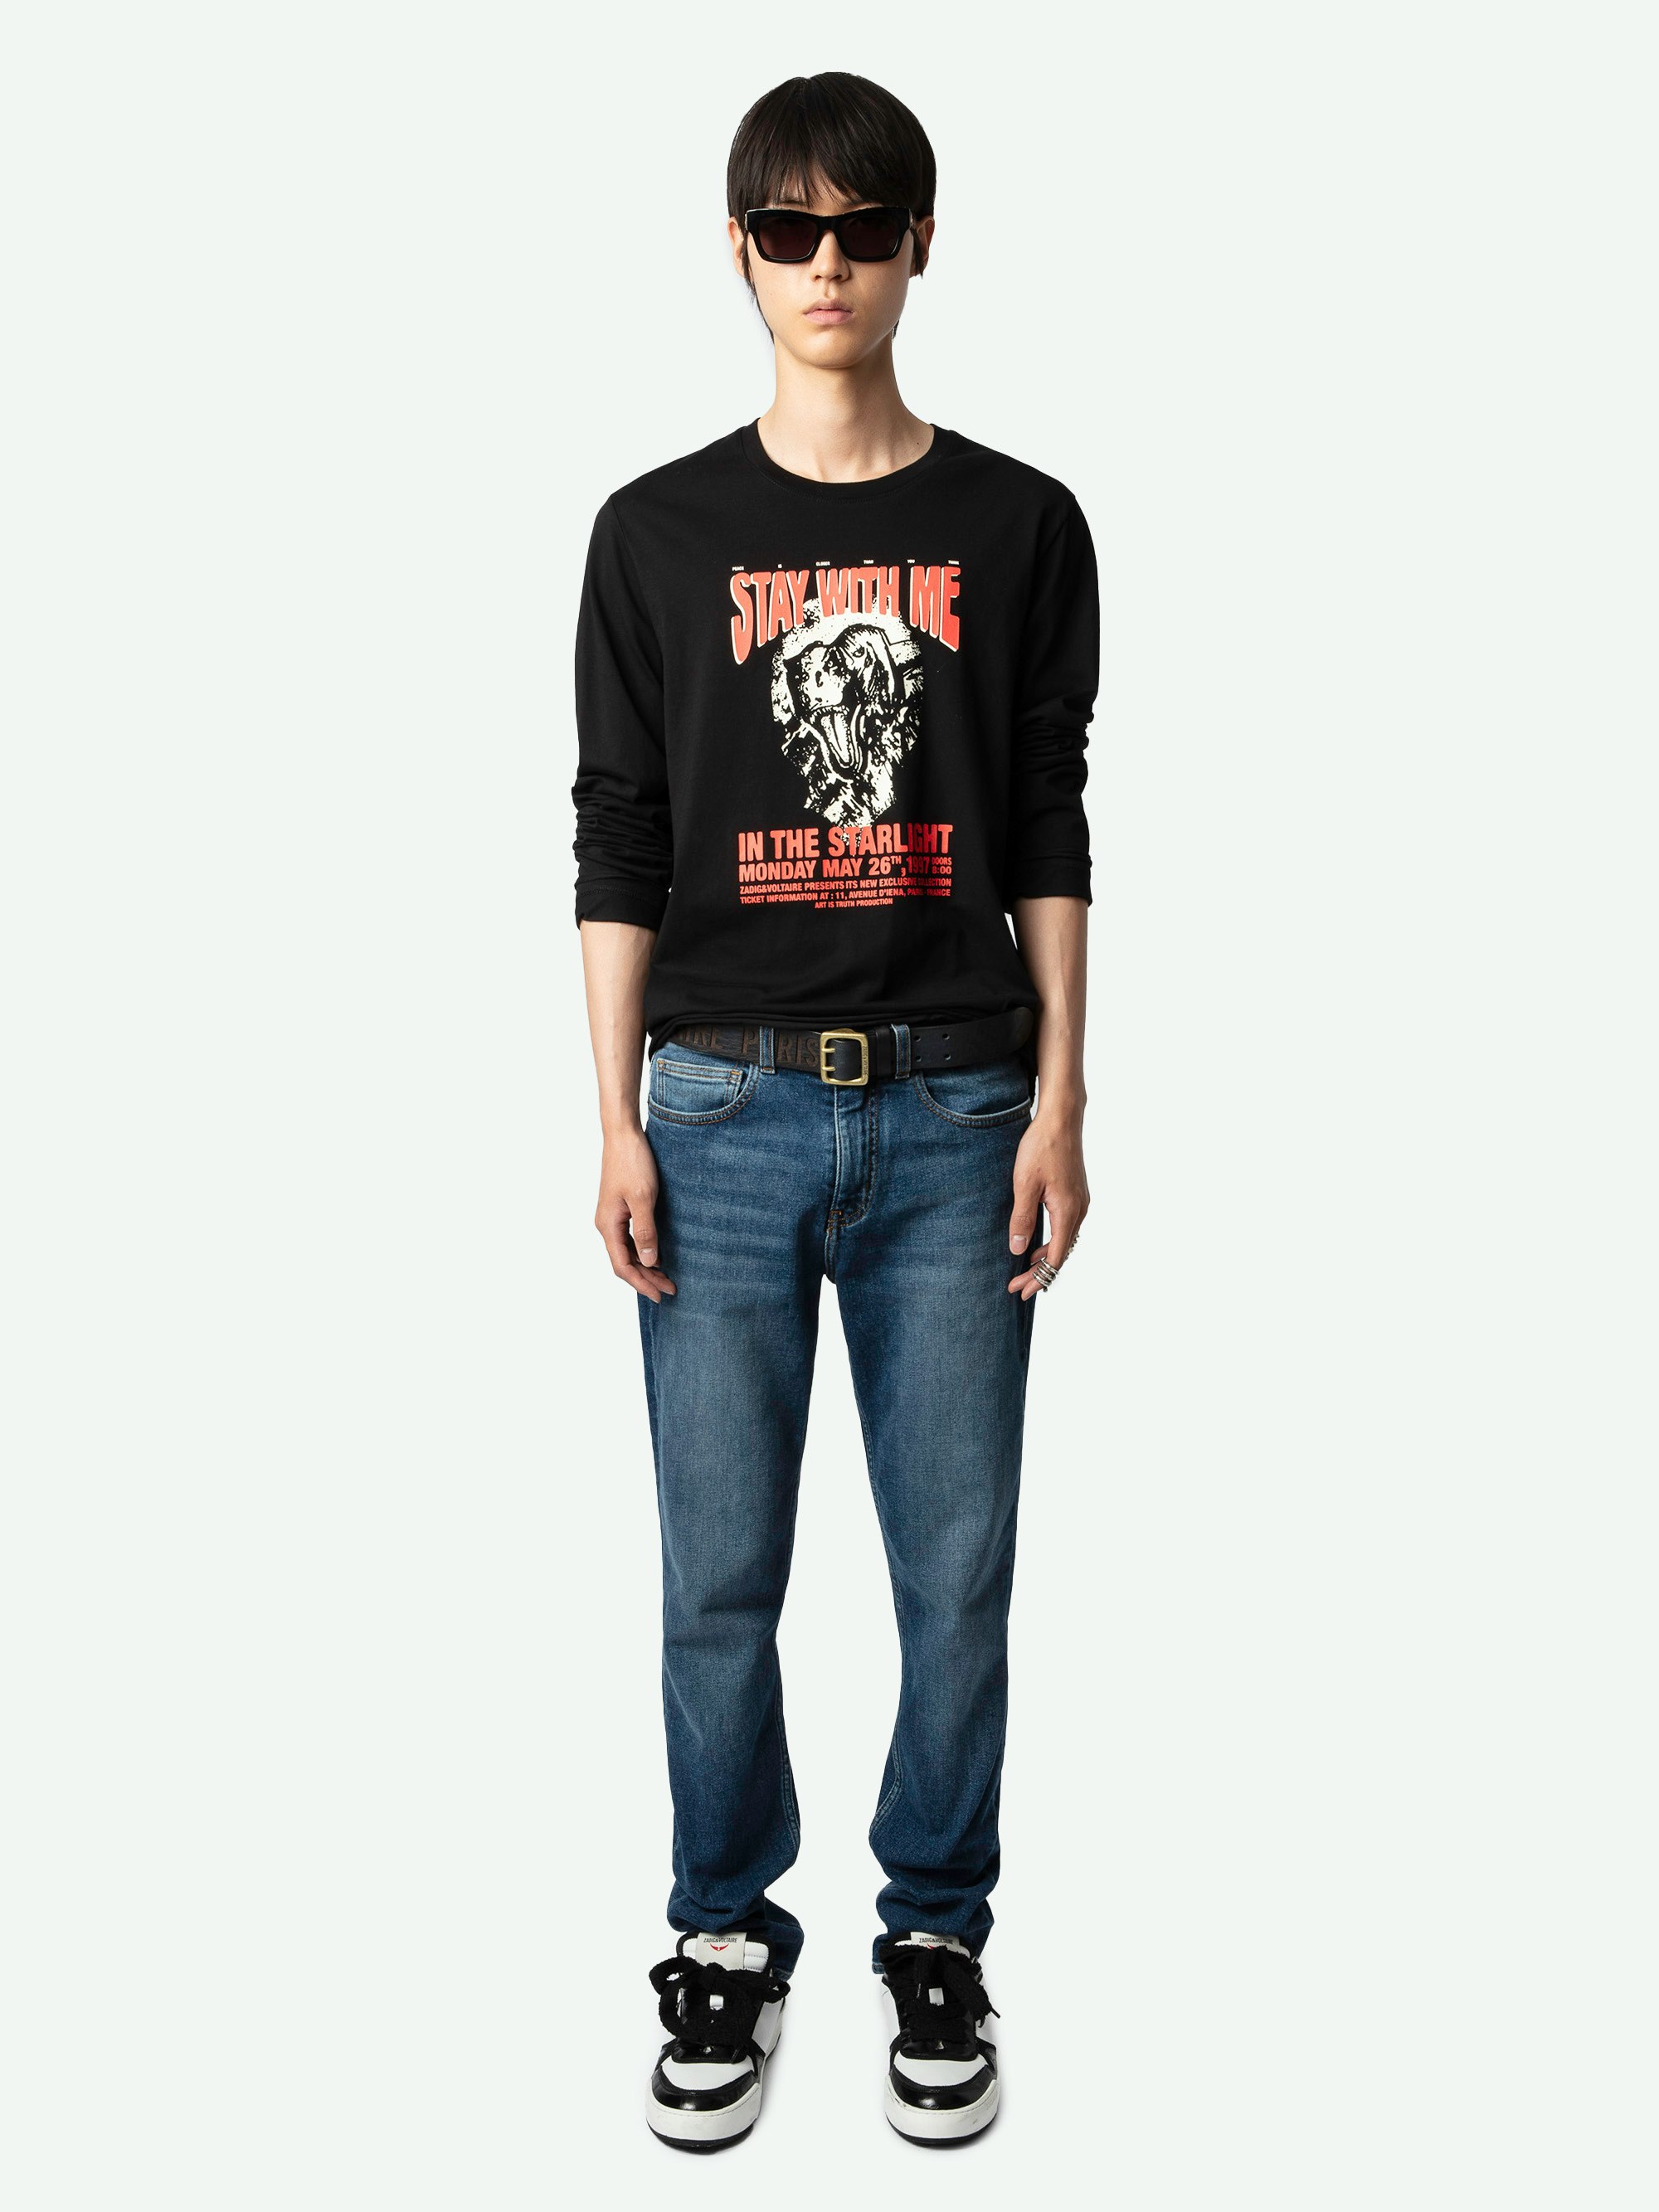 Camiseta Hector - Camiseta negra de algodón ecológico, de manga larga, con estampado Dinosaure en la parte delantera y estampado Concierto en la espalda.